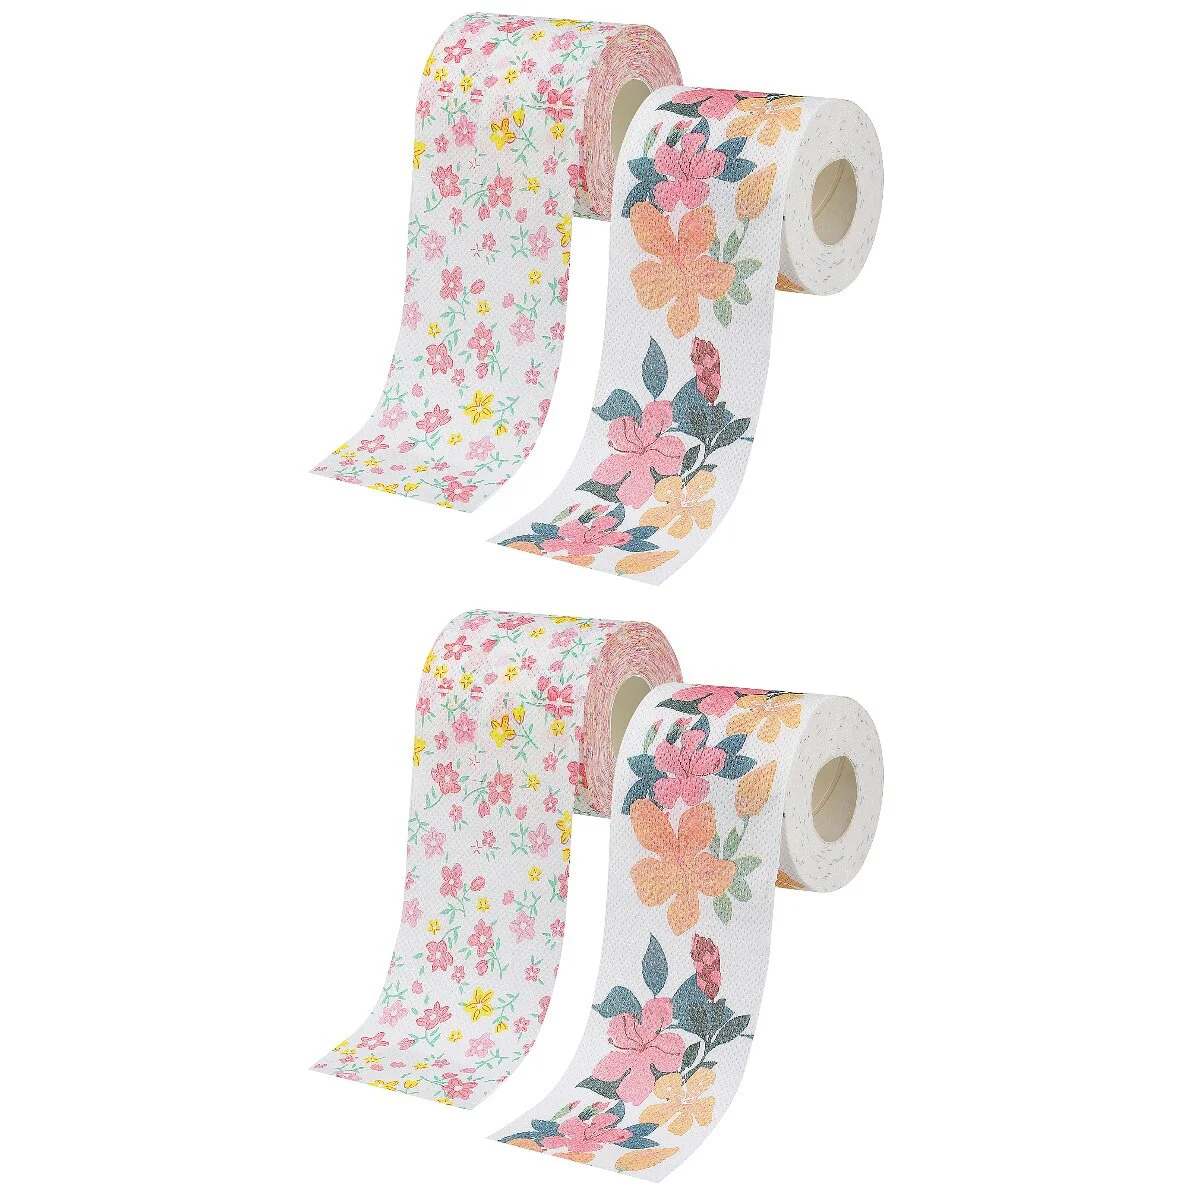 

4 рулона печатной бумаги, стандартные красочные салфетки для туалета, коммерческая фотография